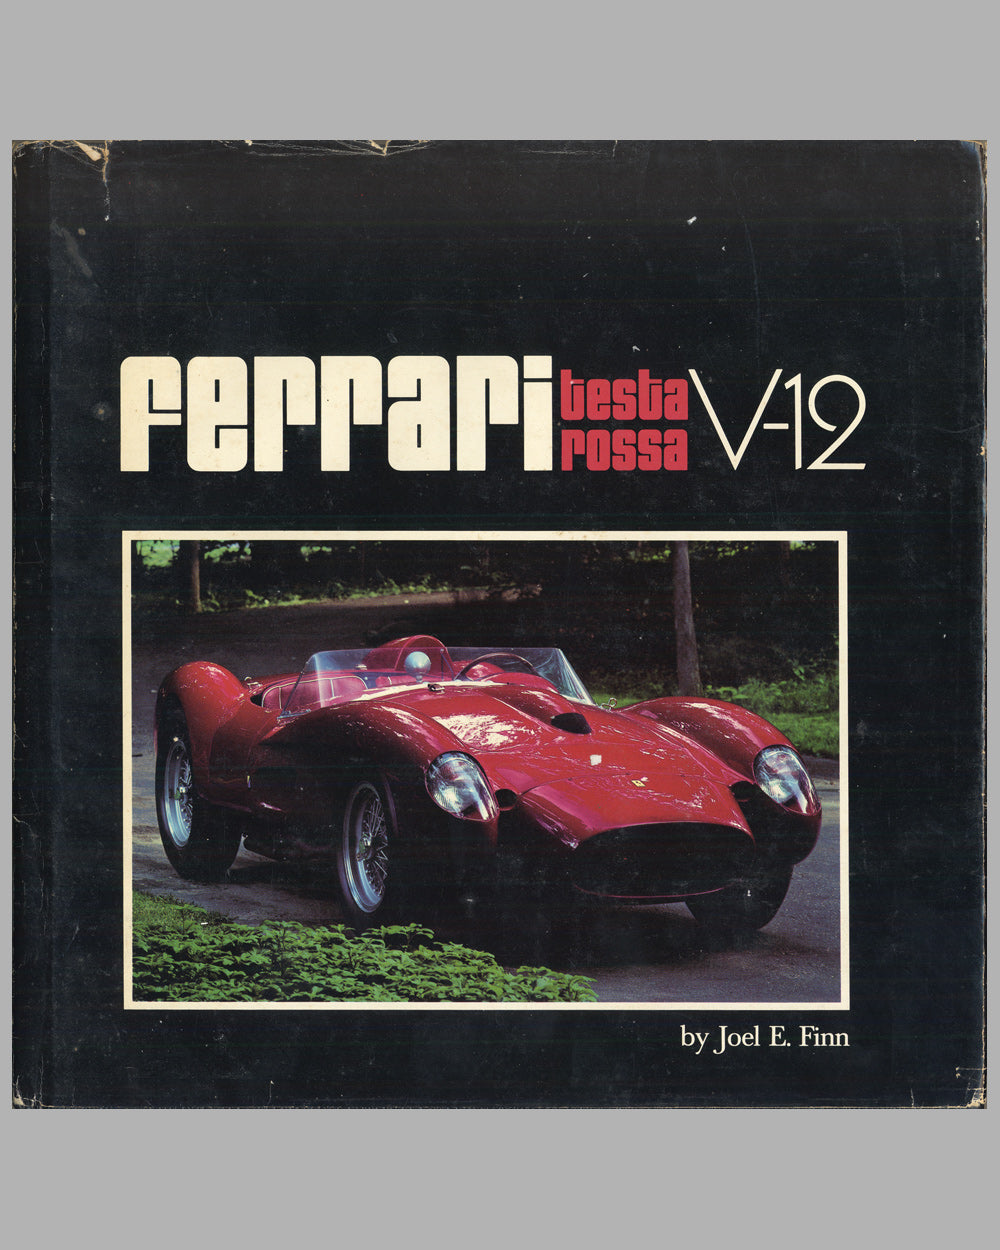 Ferrari Testa Rossa V-12 by Joel E. Finn (1979)